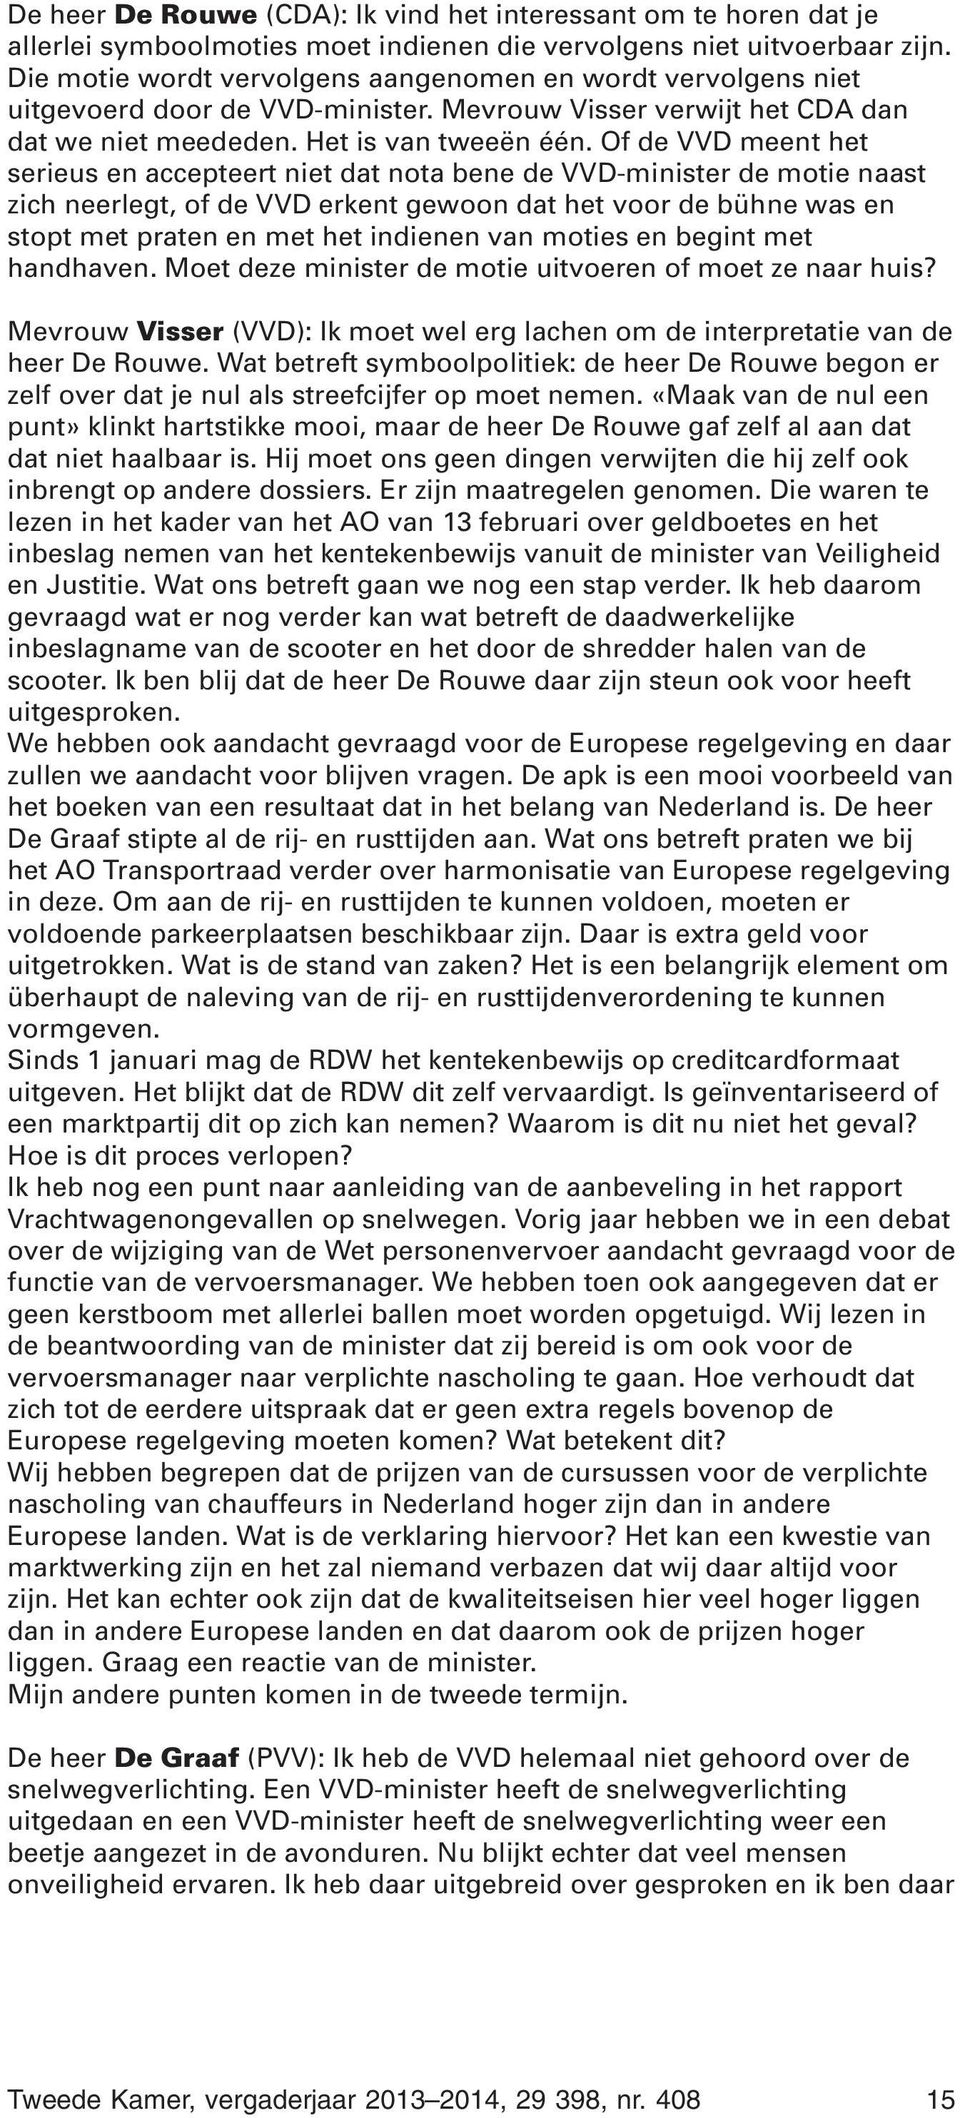 Of de VVD meent het serieus en accepteert niet dat nota bene de VVD-minister de motie naast zich neerlegt, of de VVD erkent gewoon dat het voor de bühne was en stopt met praten en met het indienen